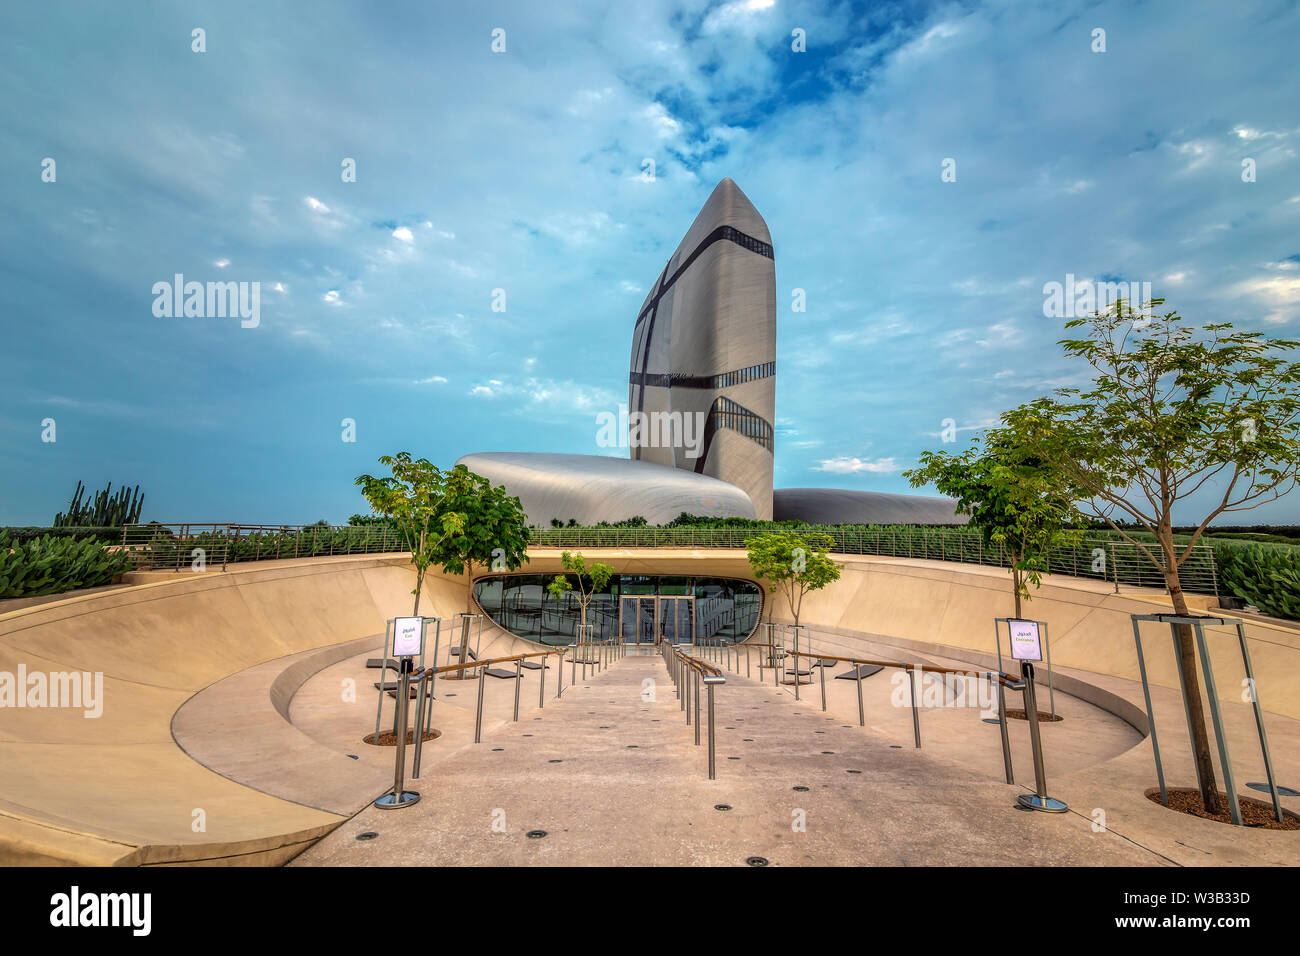 King Abdulaziz Centro per la cultura del mondo (Ithra) Città :Dammam, Paese : Arabia Saudita. La foto è stata presa il mese di novembre 23 anno 2018. Foto Stock